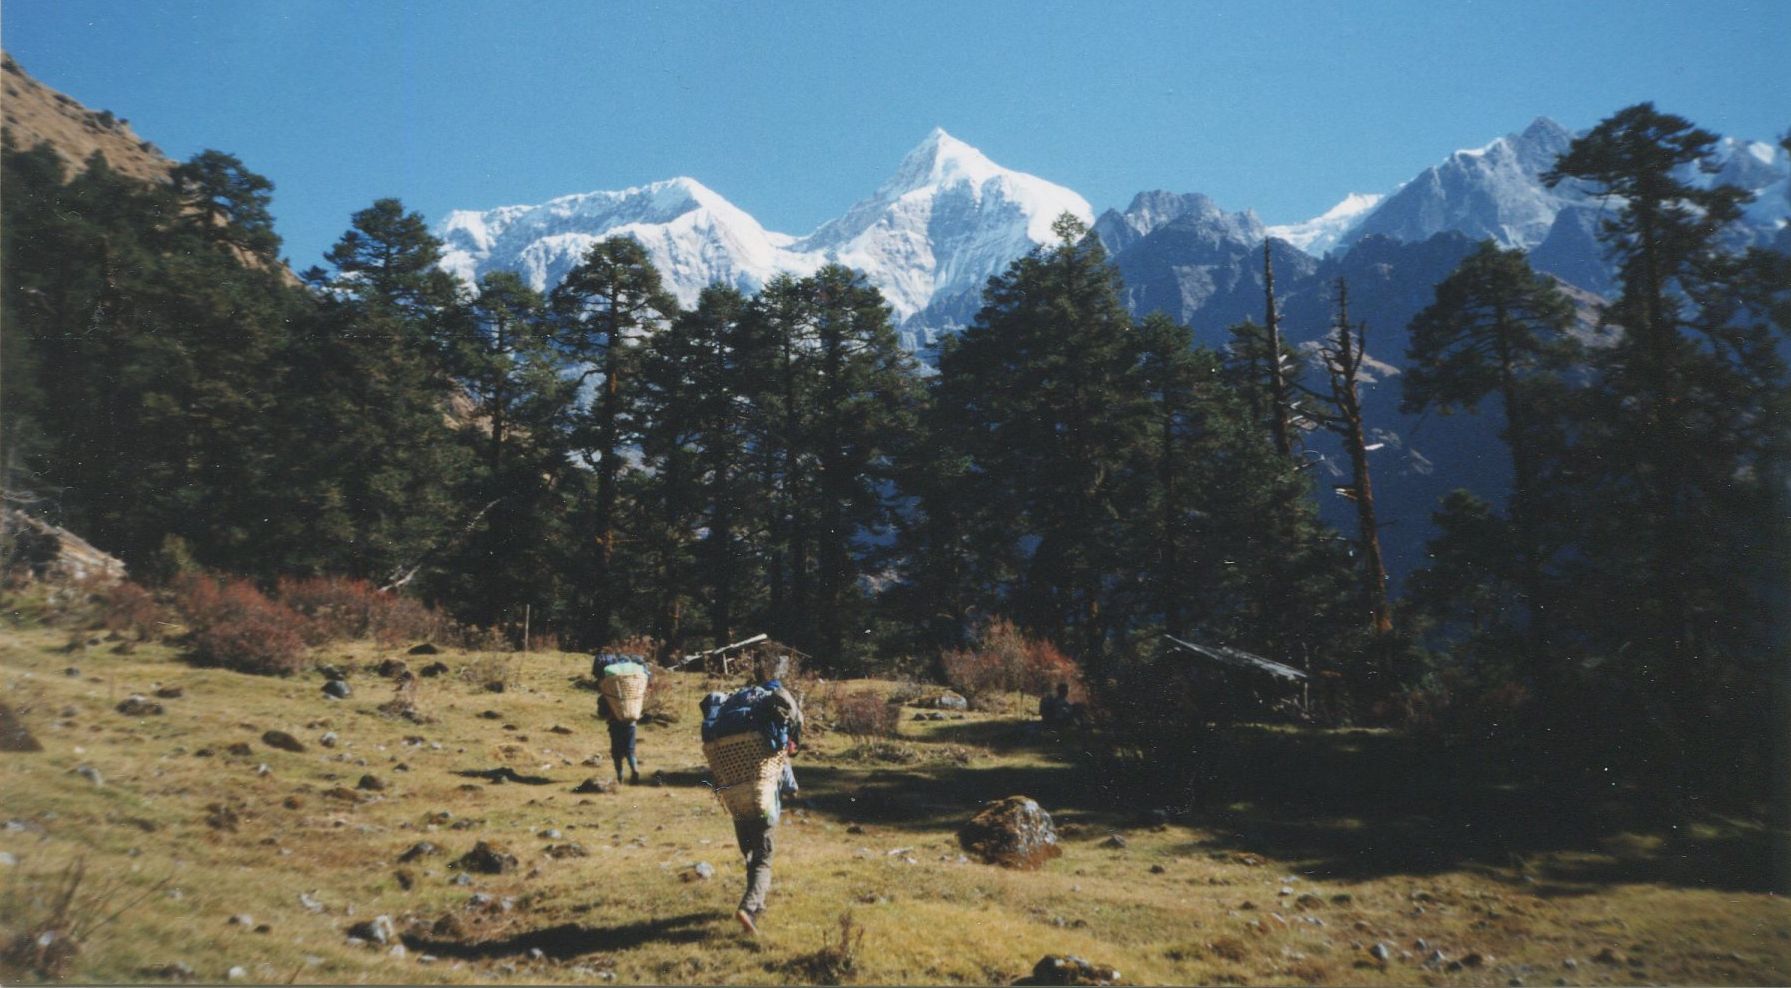 Mount Numbur from Bakangdingma Kharka above the Likhu Khola Valley